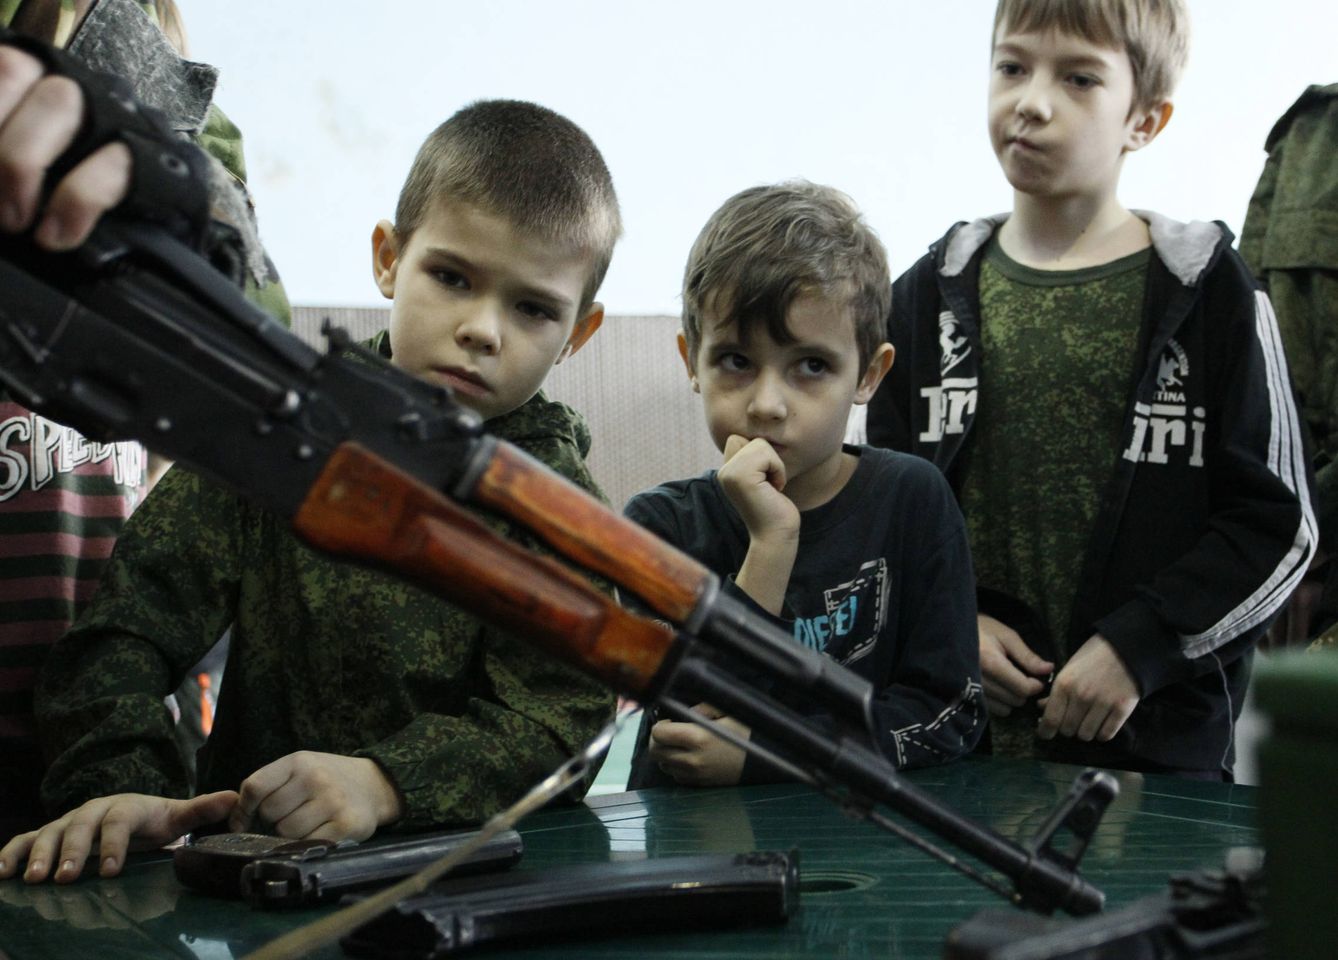 Un combatiente de las milicias prorrusas de Donetsk muestra un rifle de asalto a unos niños durante unas jornadas educativas para menores, en Donetsk. (Reuters)